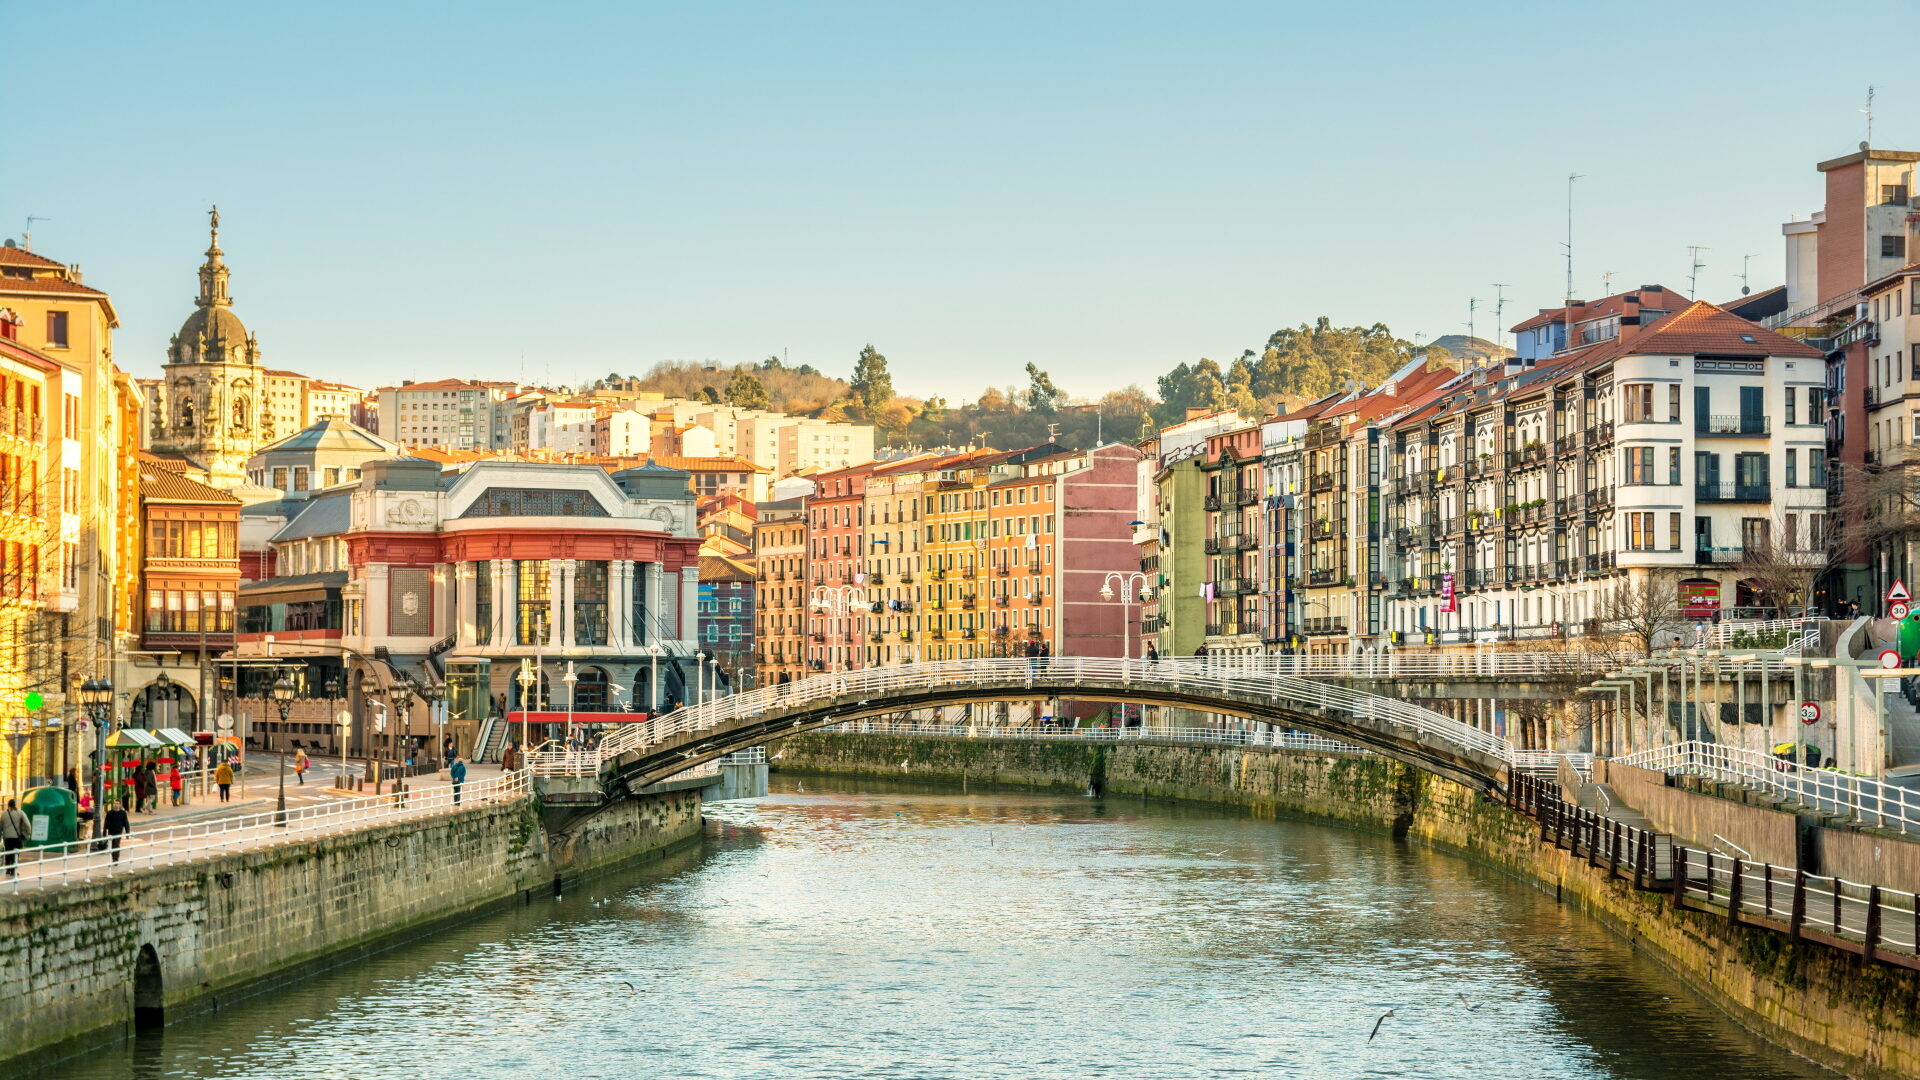 Frankfurt (FRA) – Bilbao (BIO)